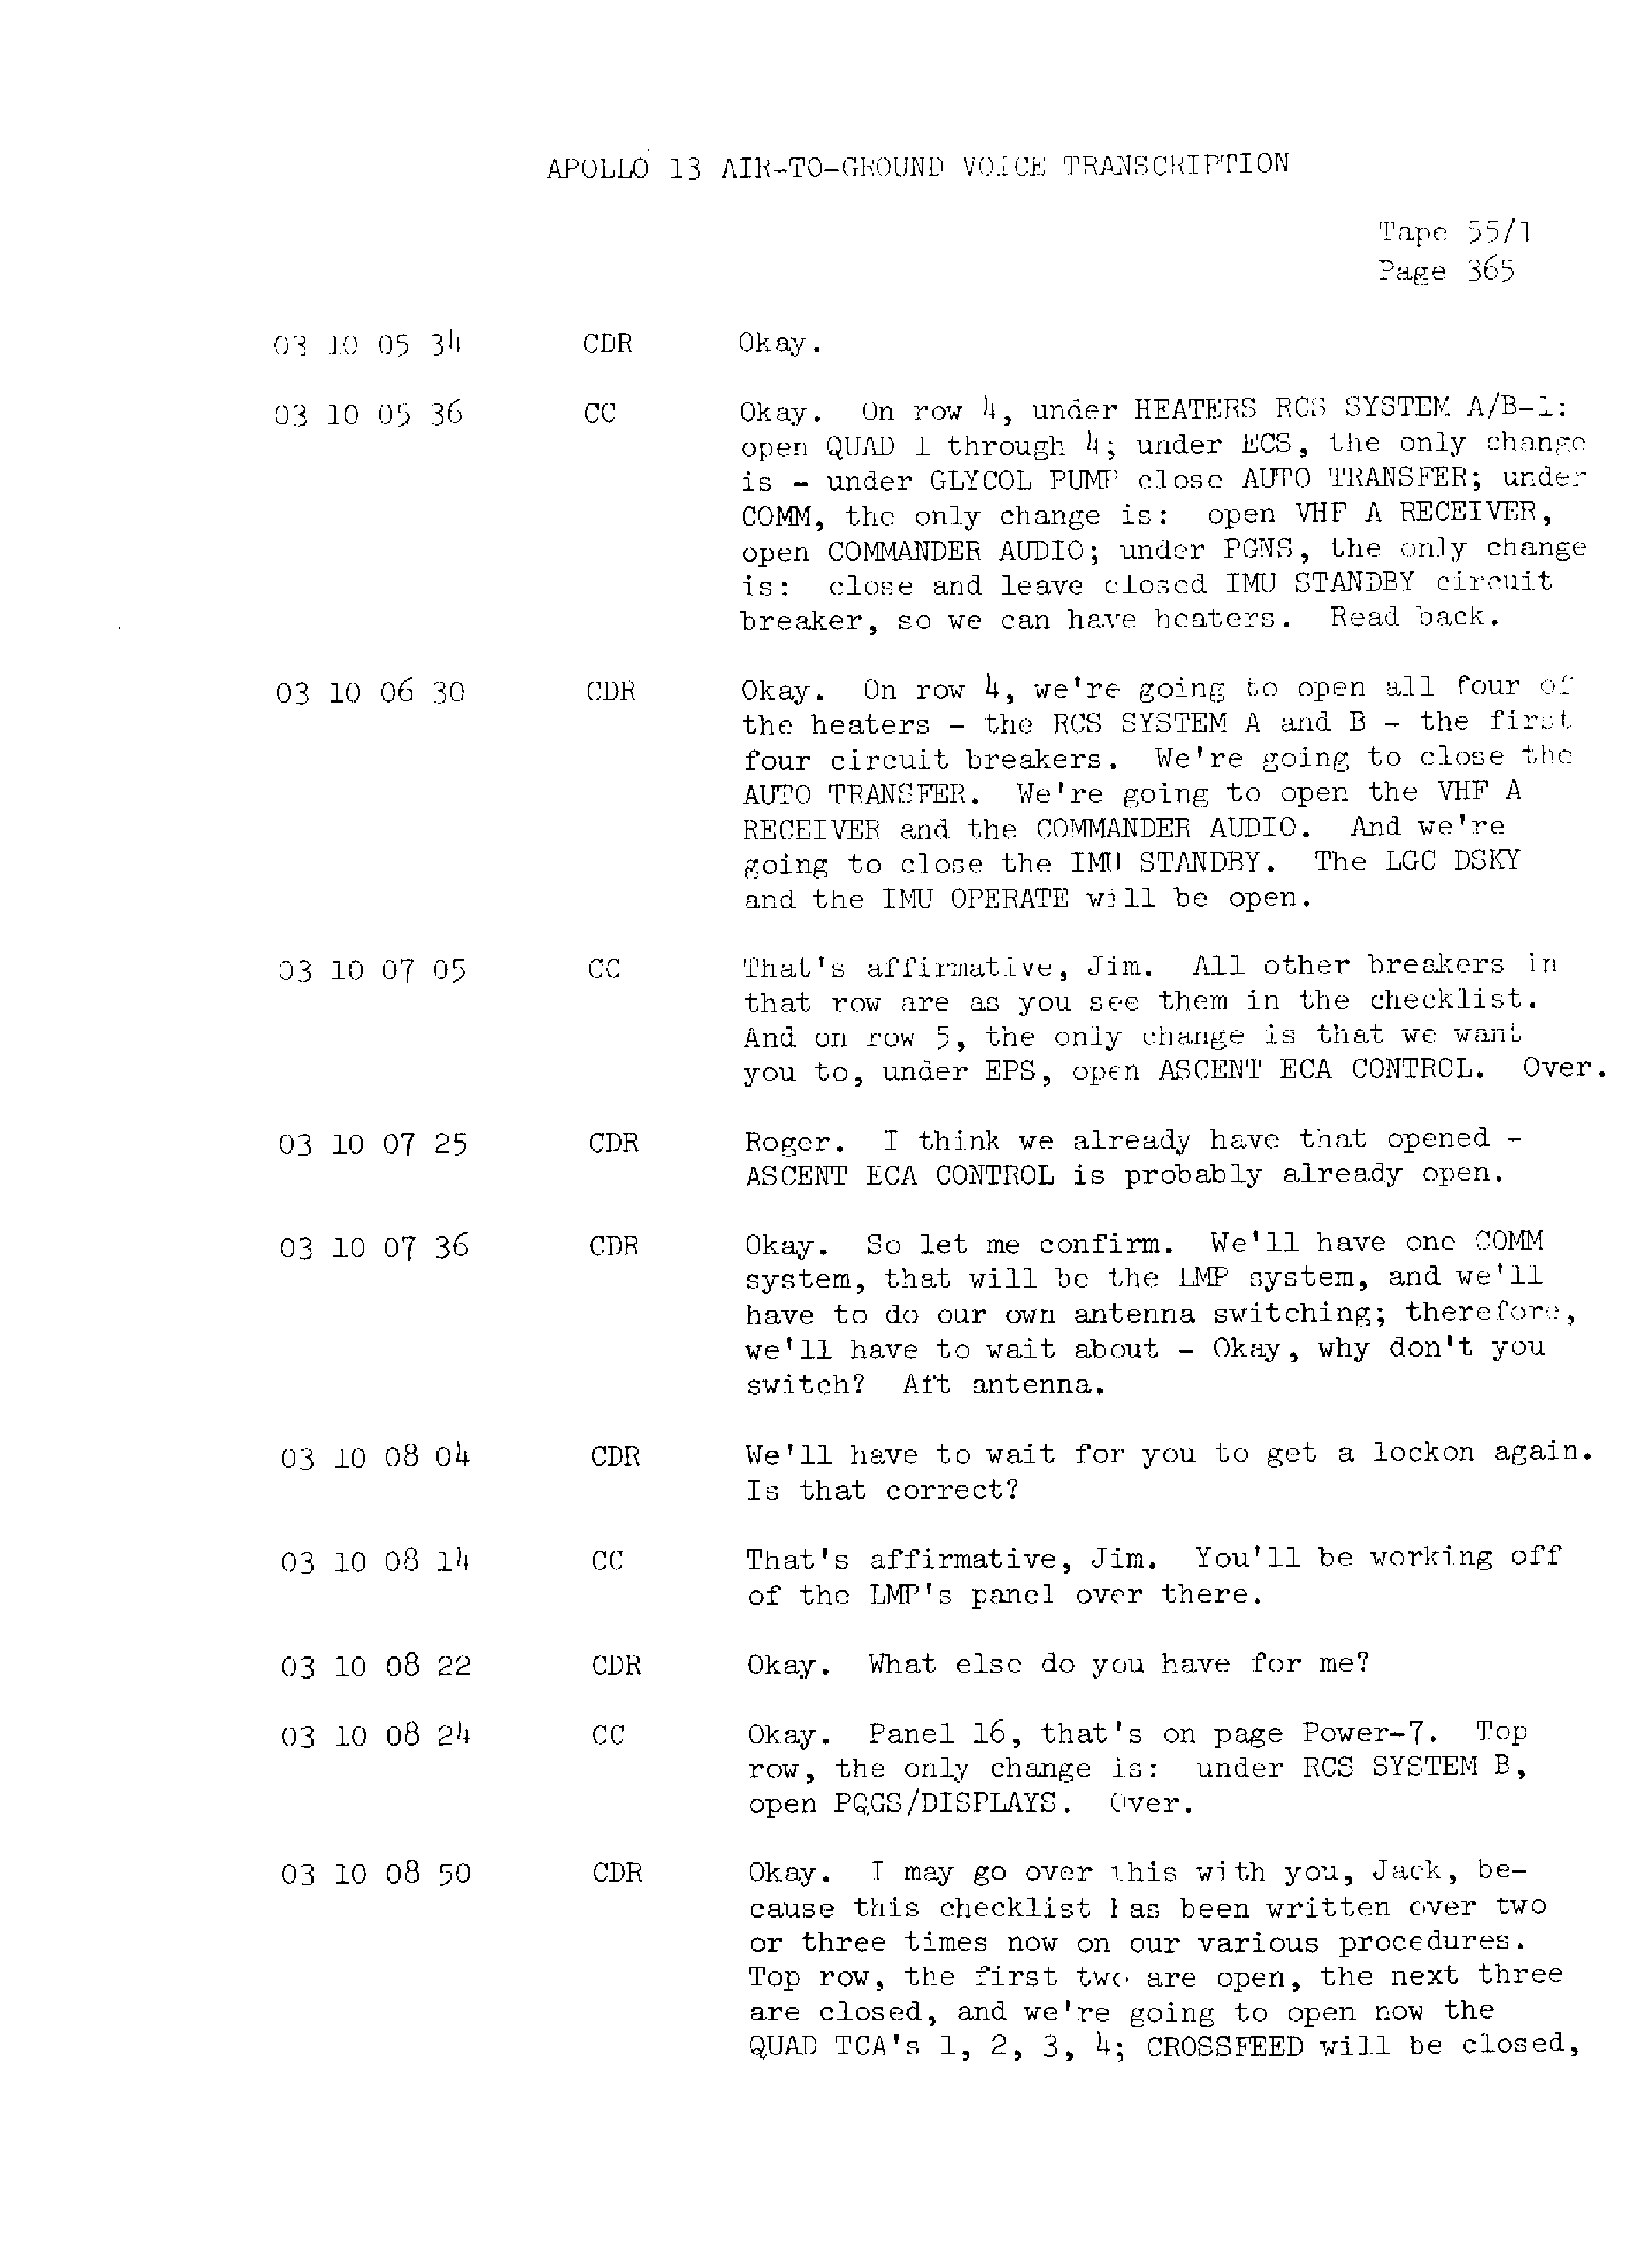 Page 372 of Apollo 13’s original transcript